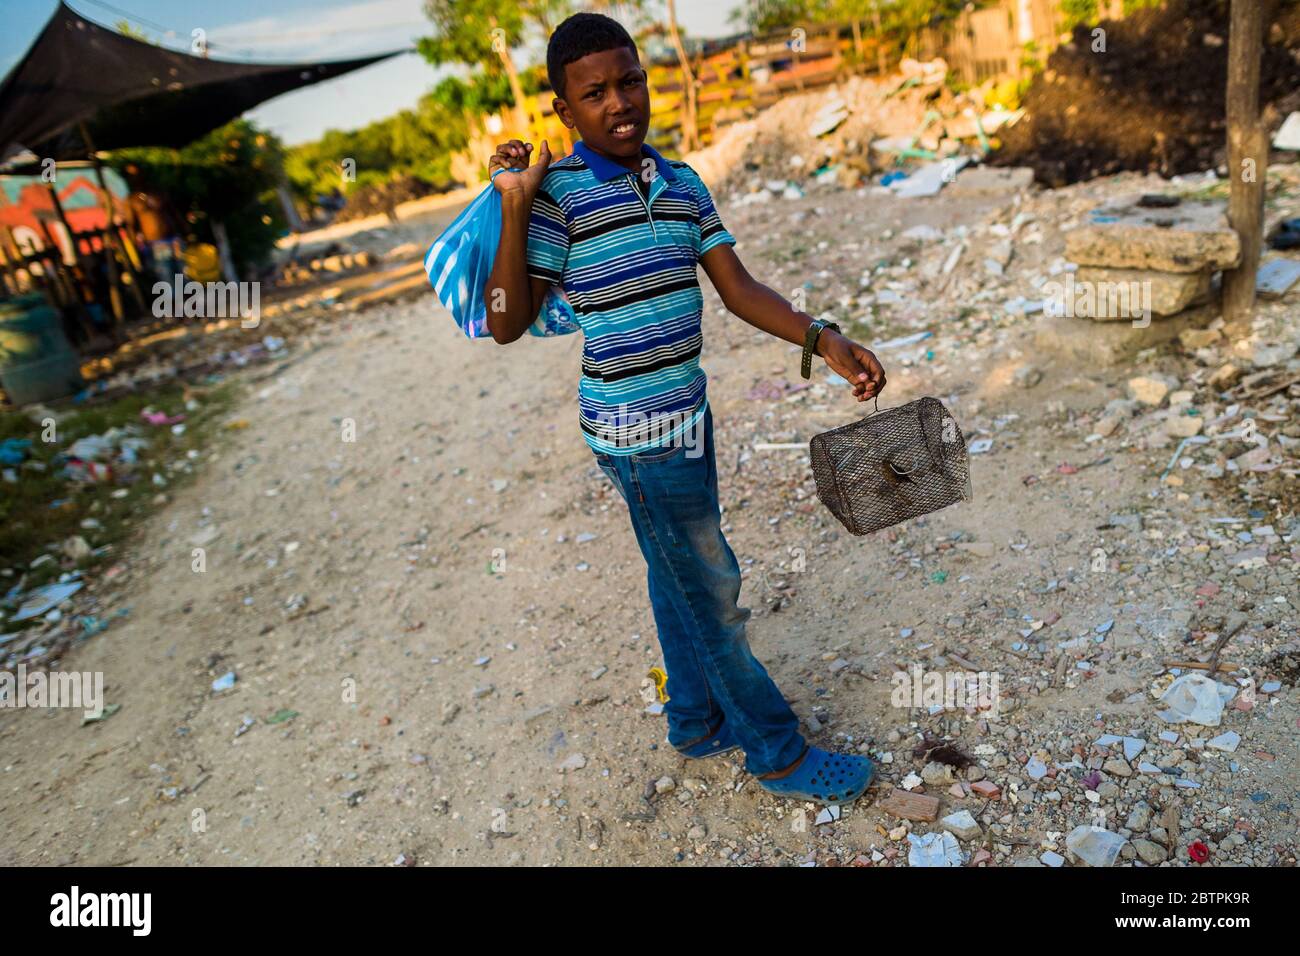 Un garçon colombien porte une petite cage à oiseaux, avec un canari sauvage à l'intérieur, dans le quartier Olaya Herrera à Cartagena, en Colombie. Banque D'Images